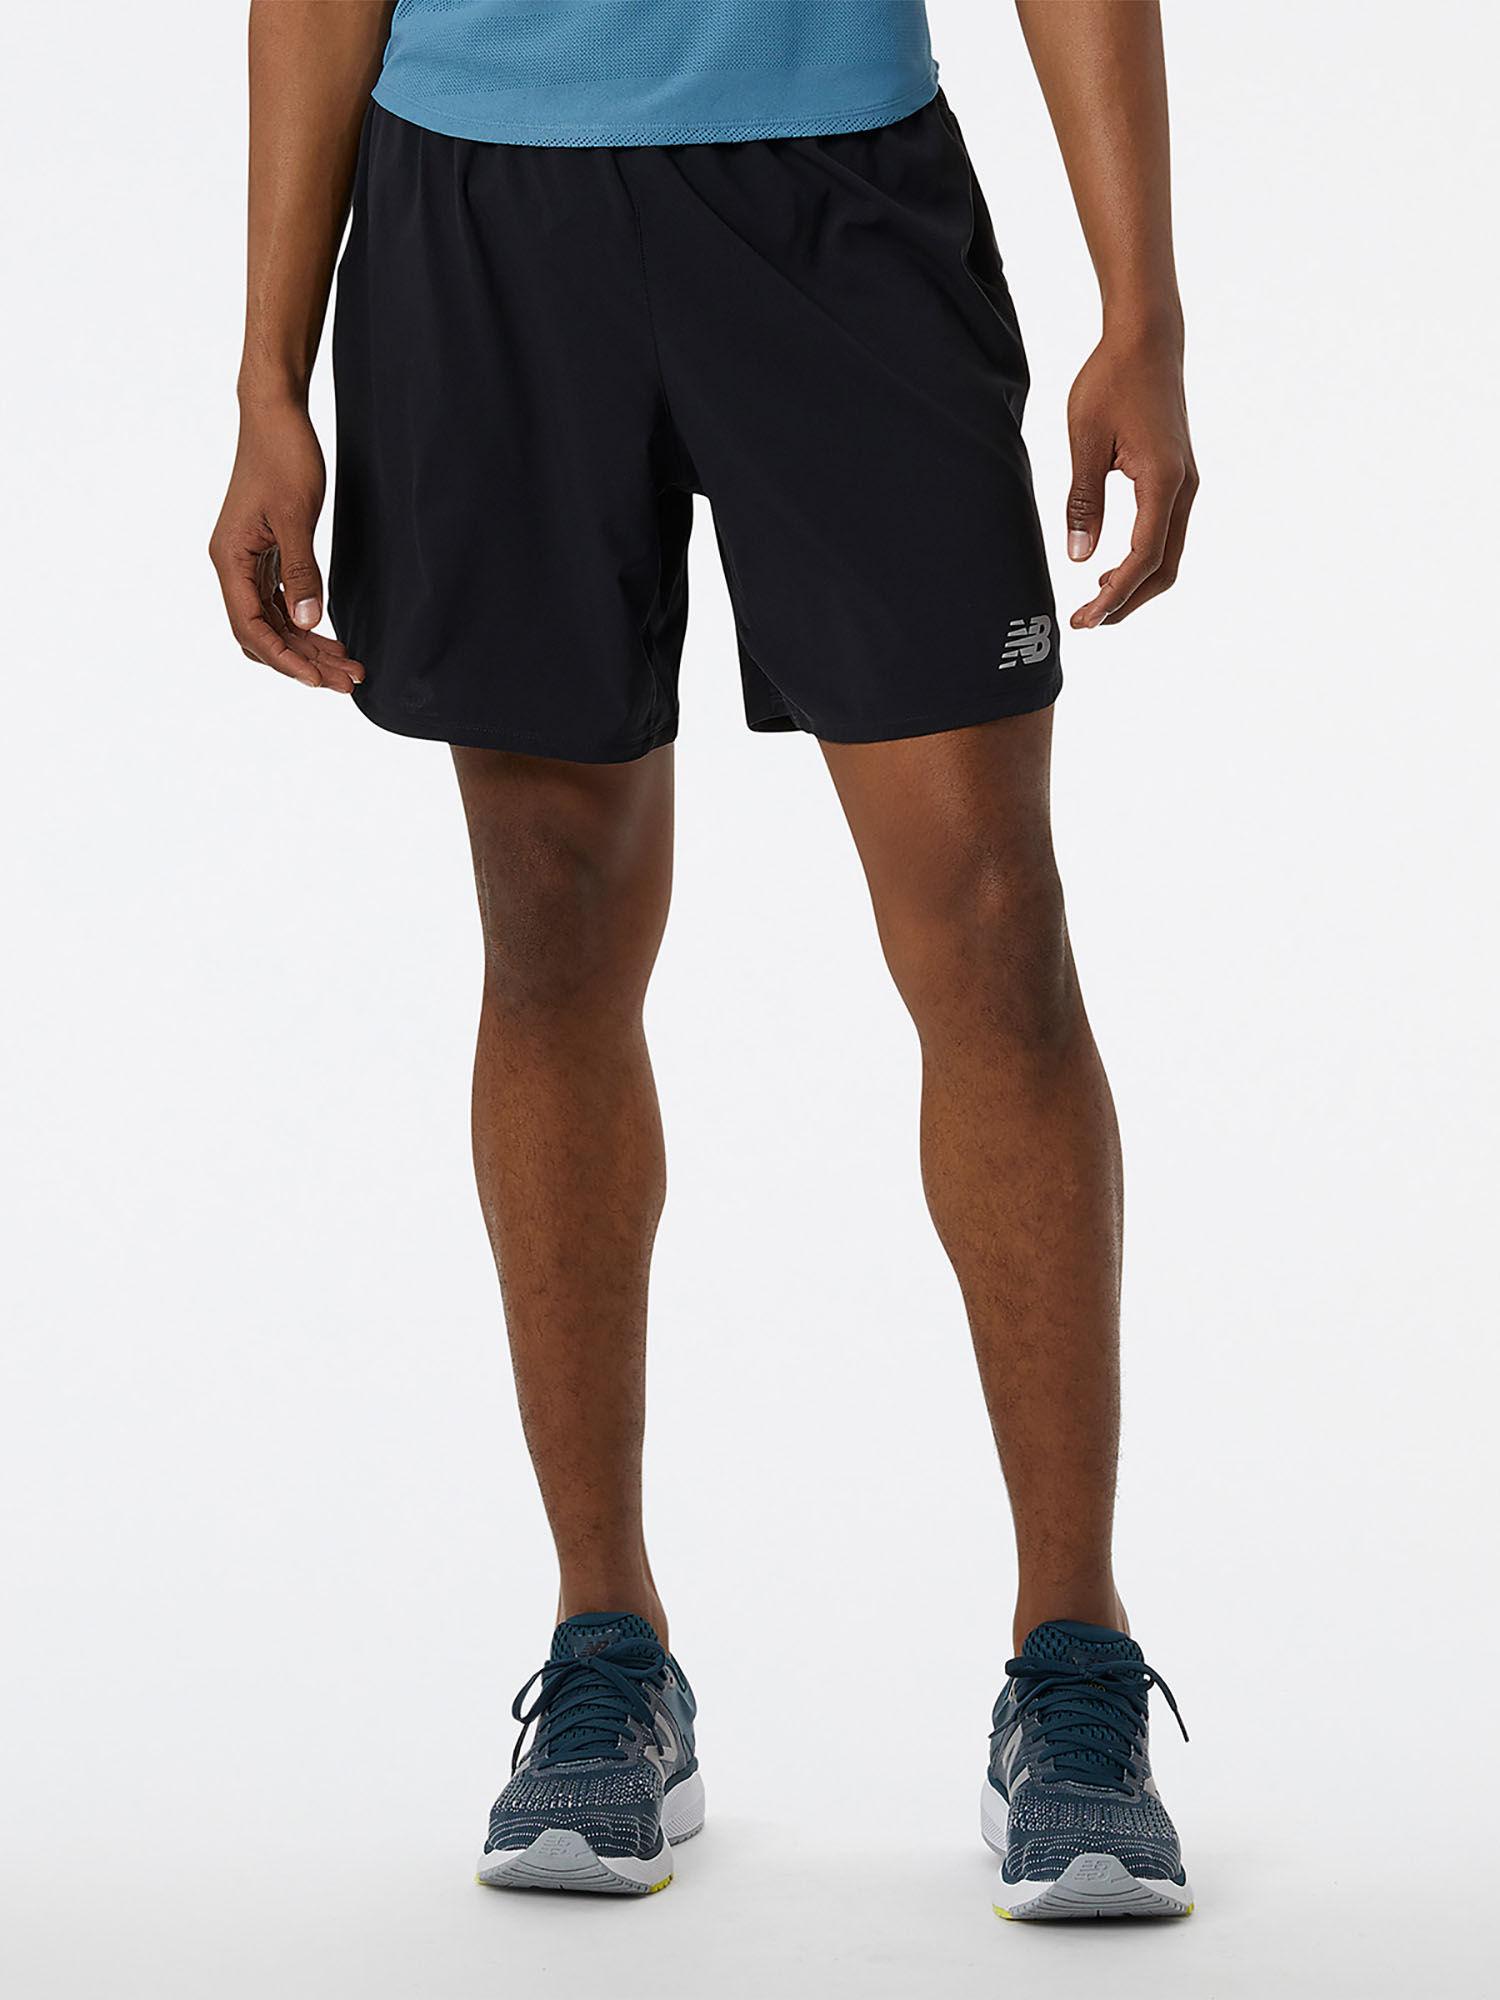 men-black-mid-rise-sports-shorts